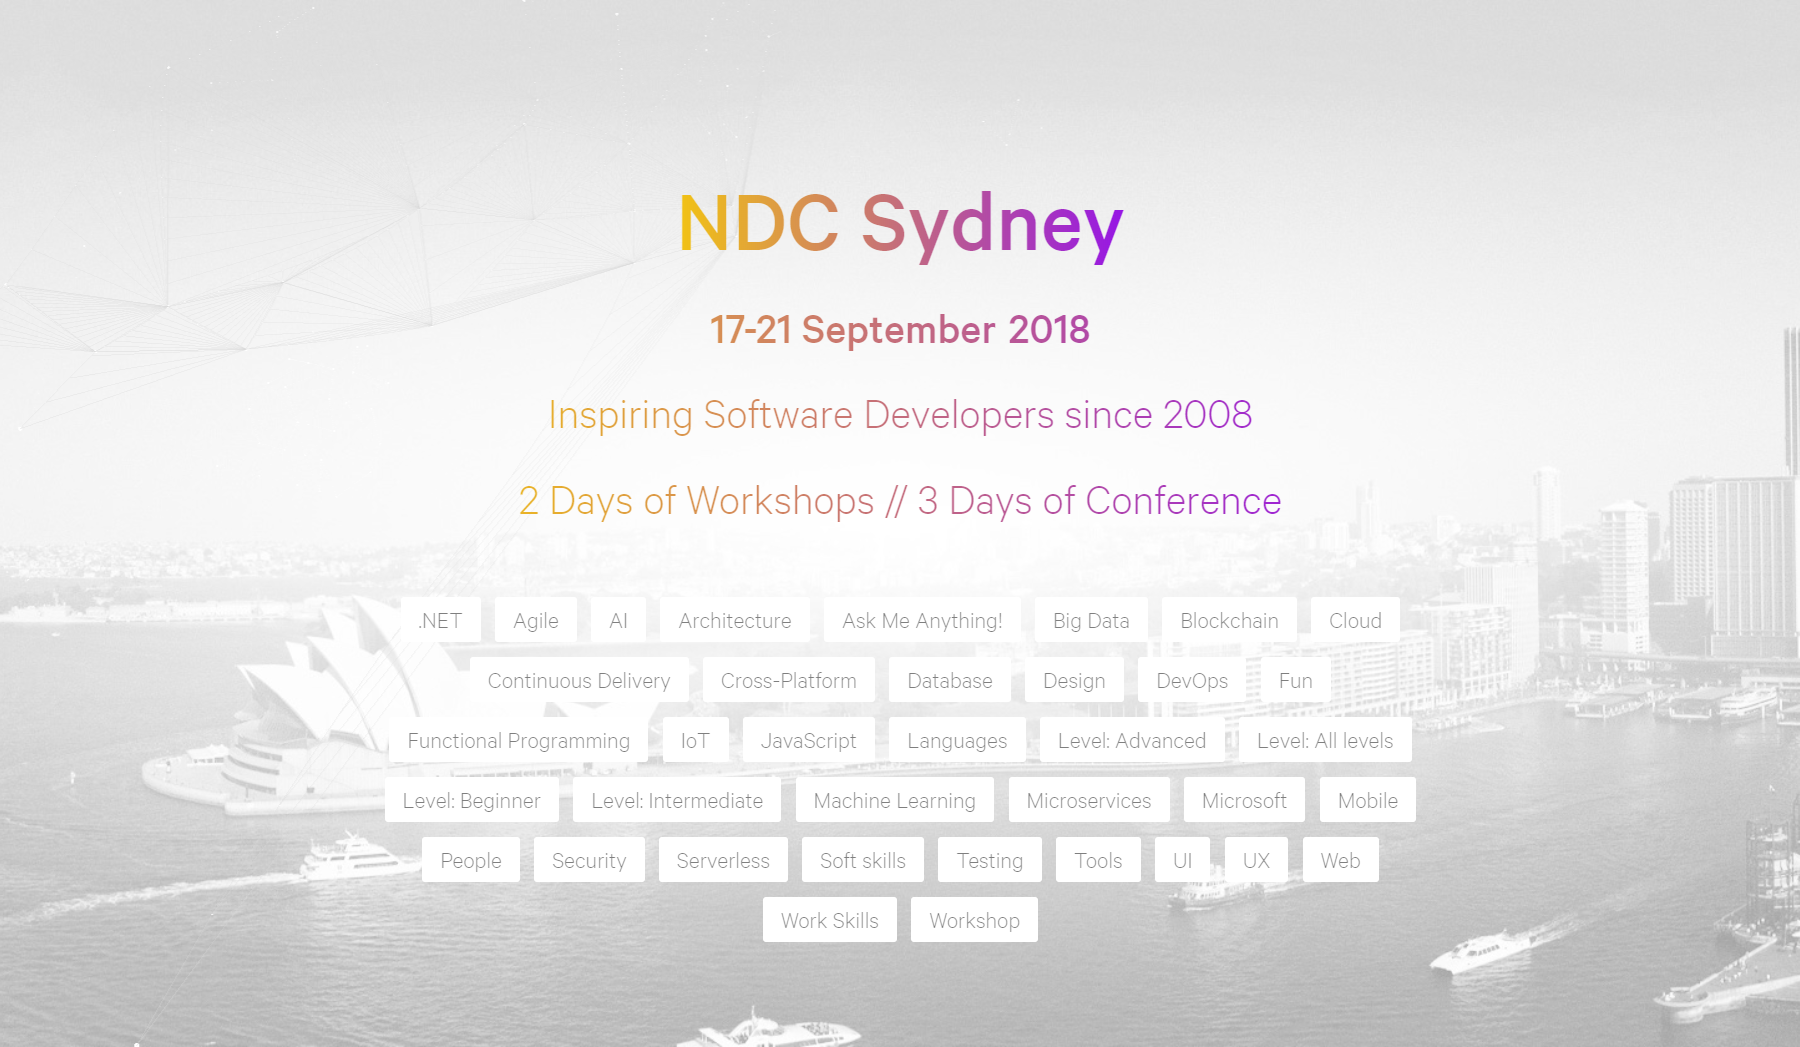 NDC Sydney 2018